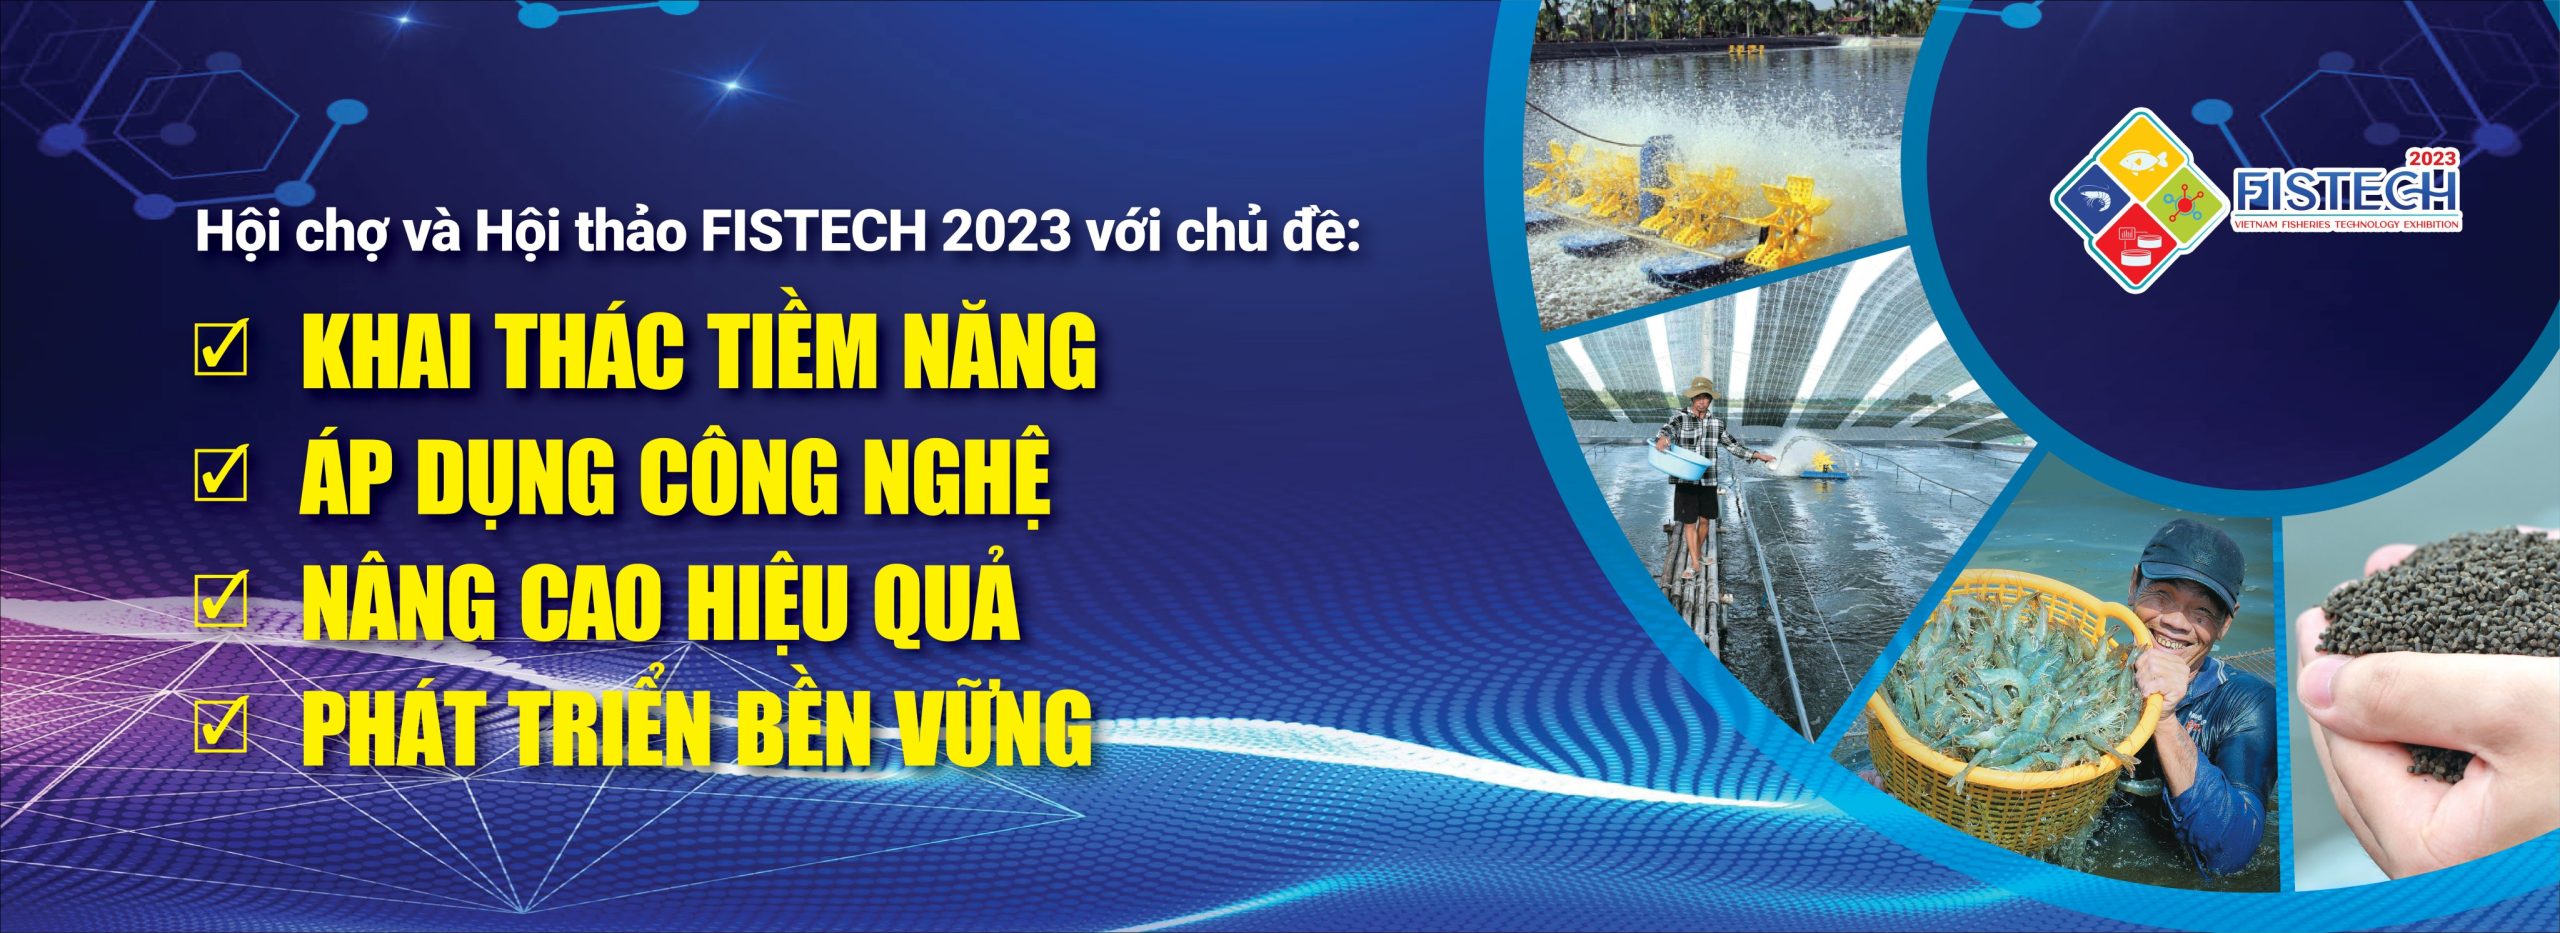 trien-lam-fishtech-2023-02